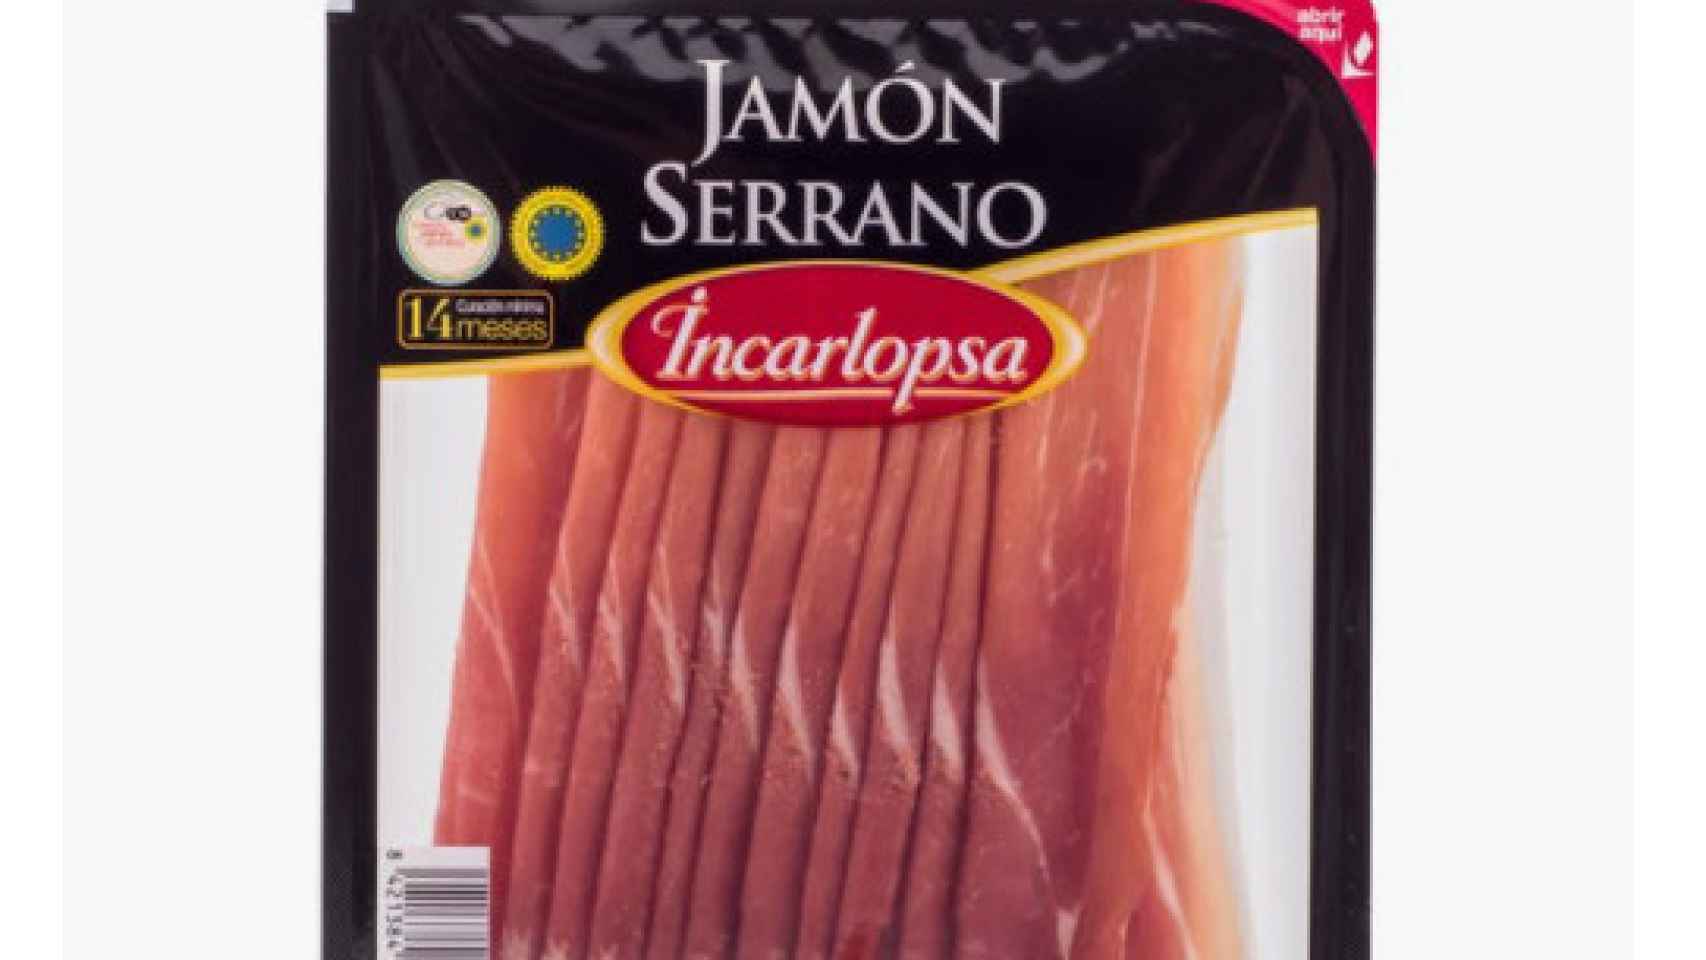 El paquete de jamón cortado de Incarlopsa.